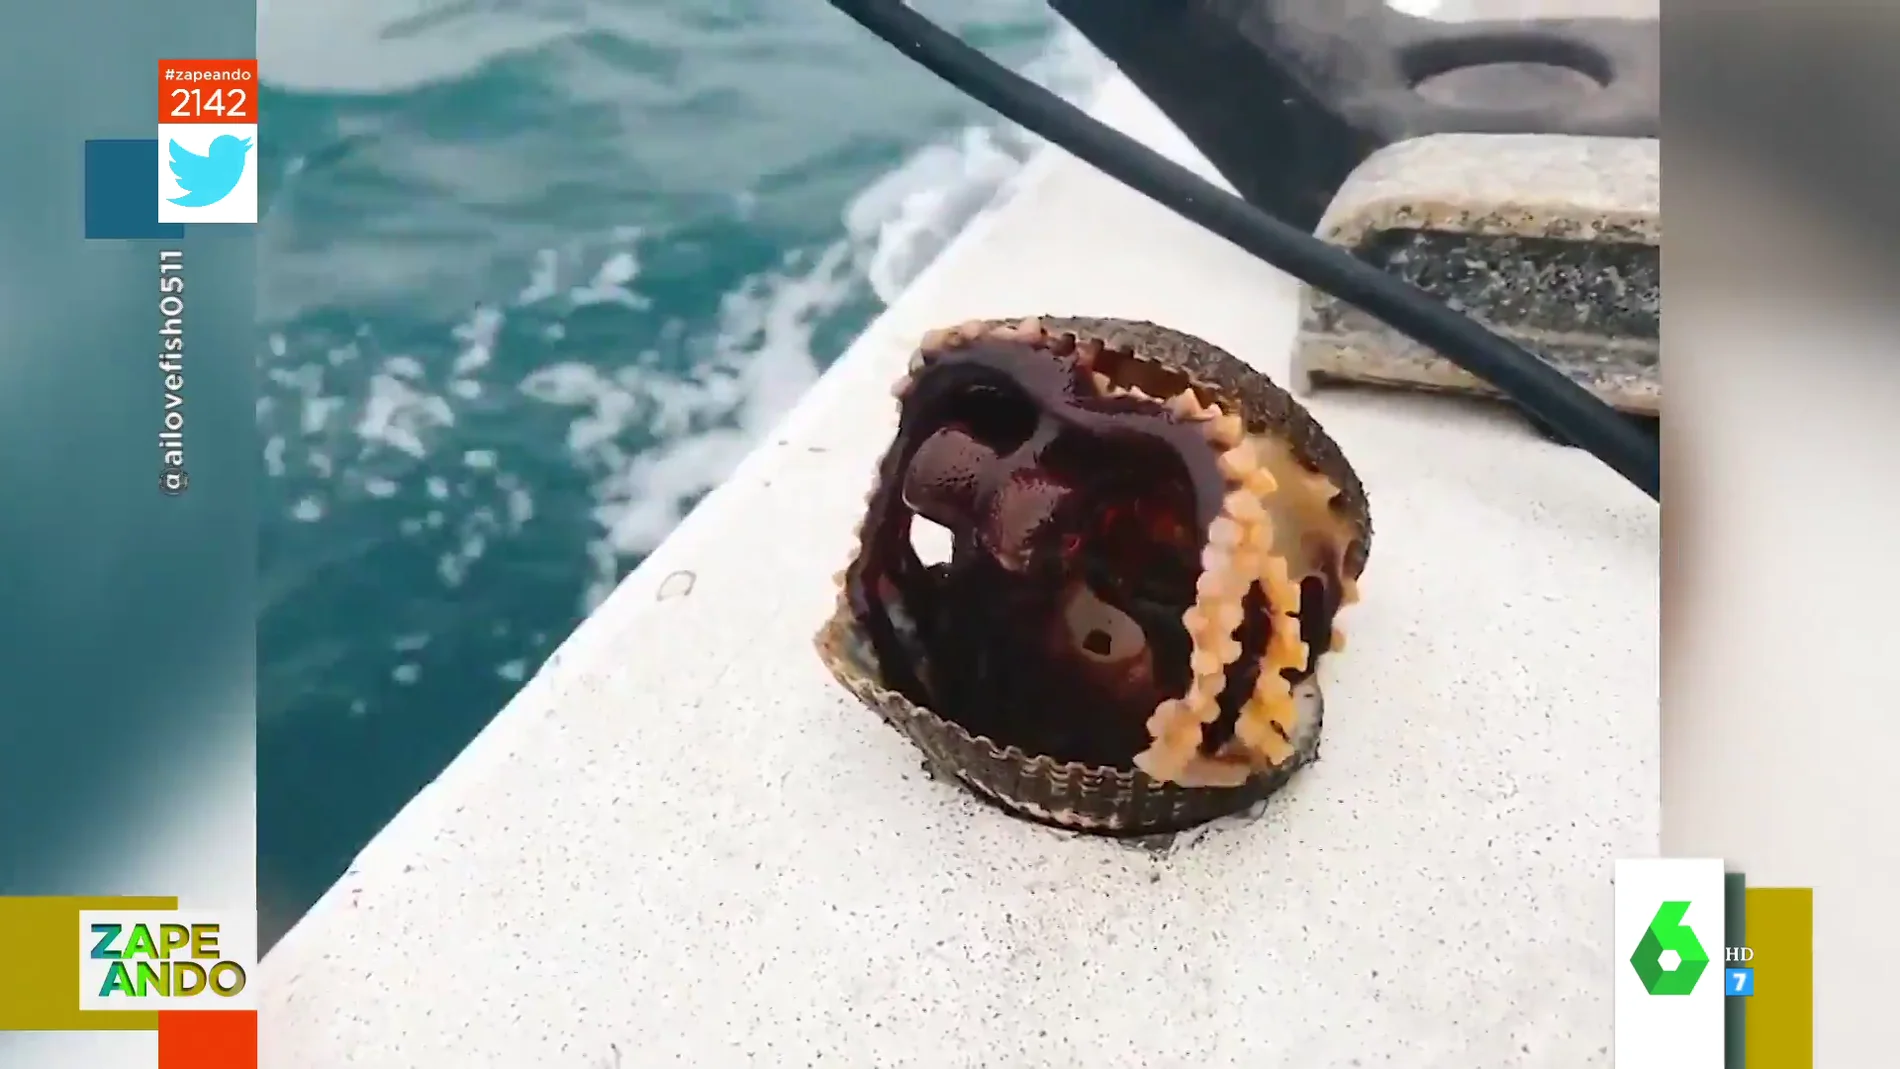 Vídeo viral de un pulpo camuflado en una concha